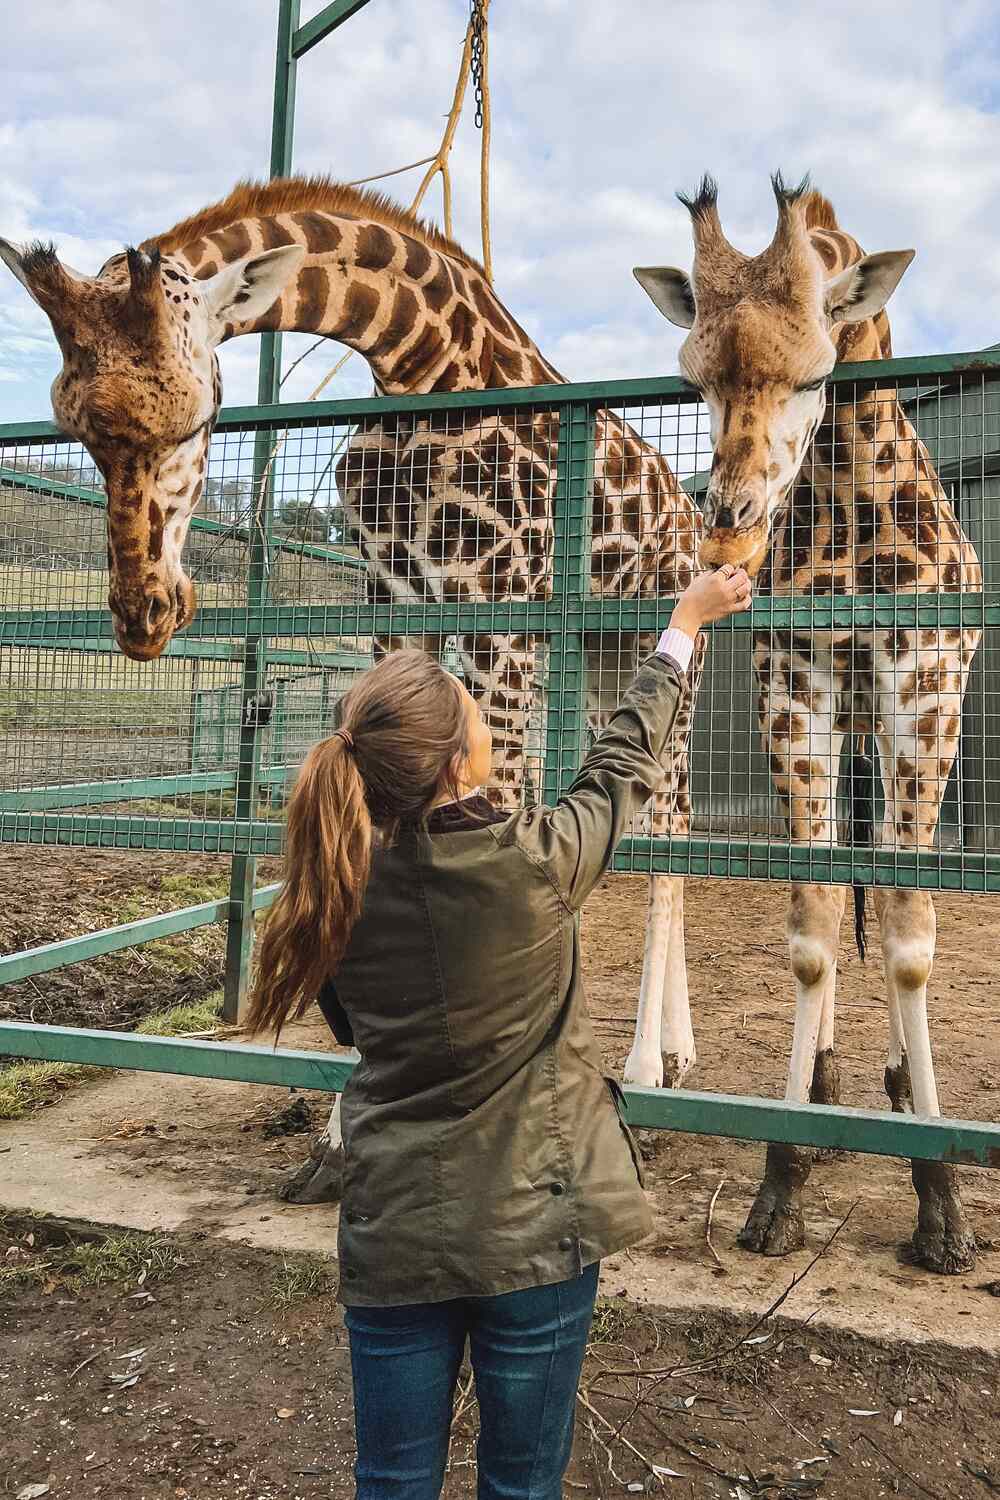 Feeding a Giraffe at Port Lympne